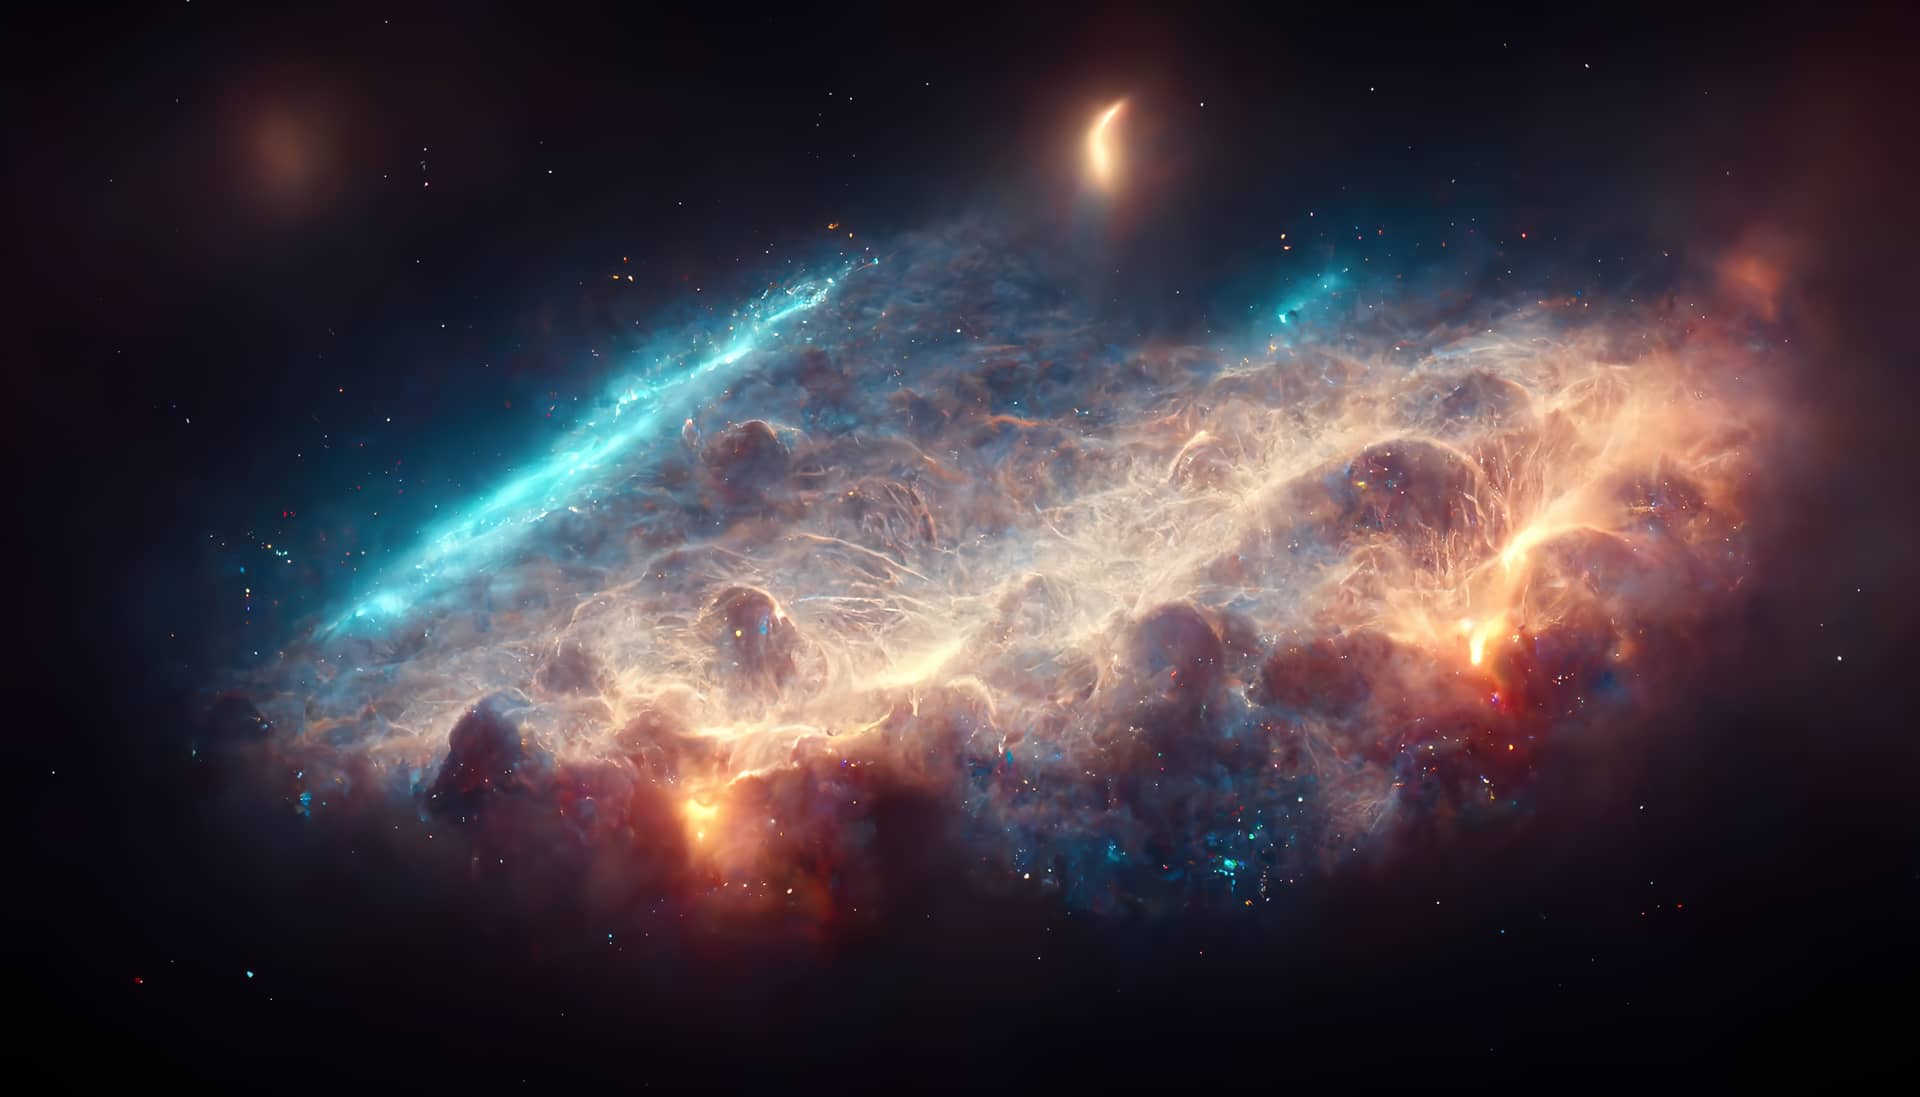 Nebula milkyway galaxies space 3d render raster illustration